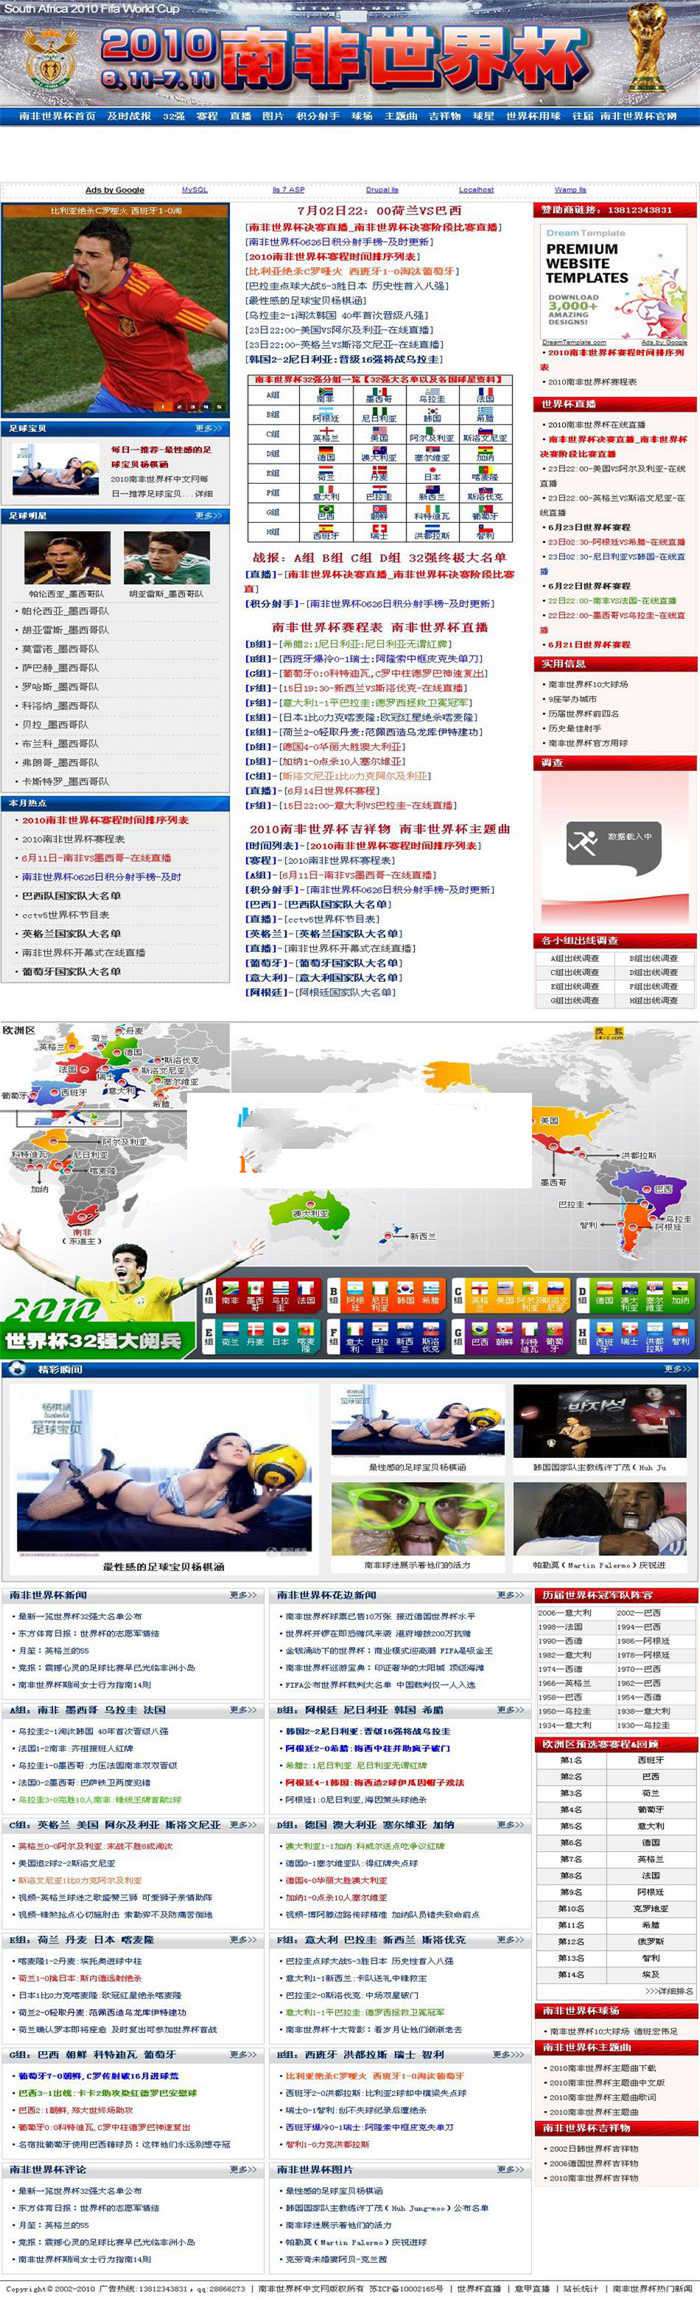 [精品源码]织梦dedecms世界杯中文网 足球赛事体育比分网站源码插图